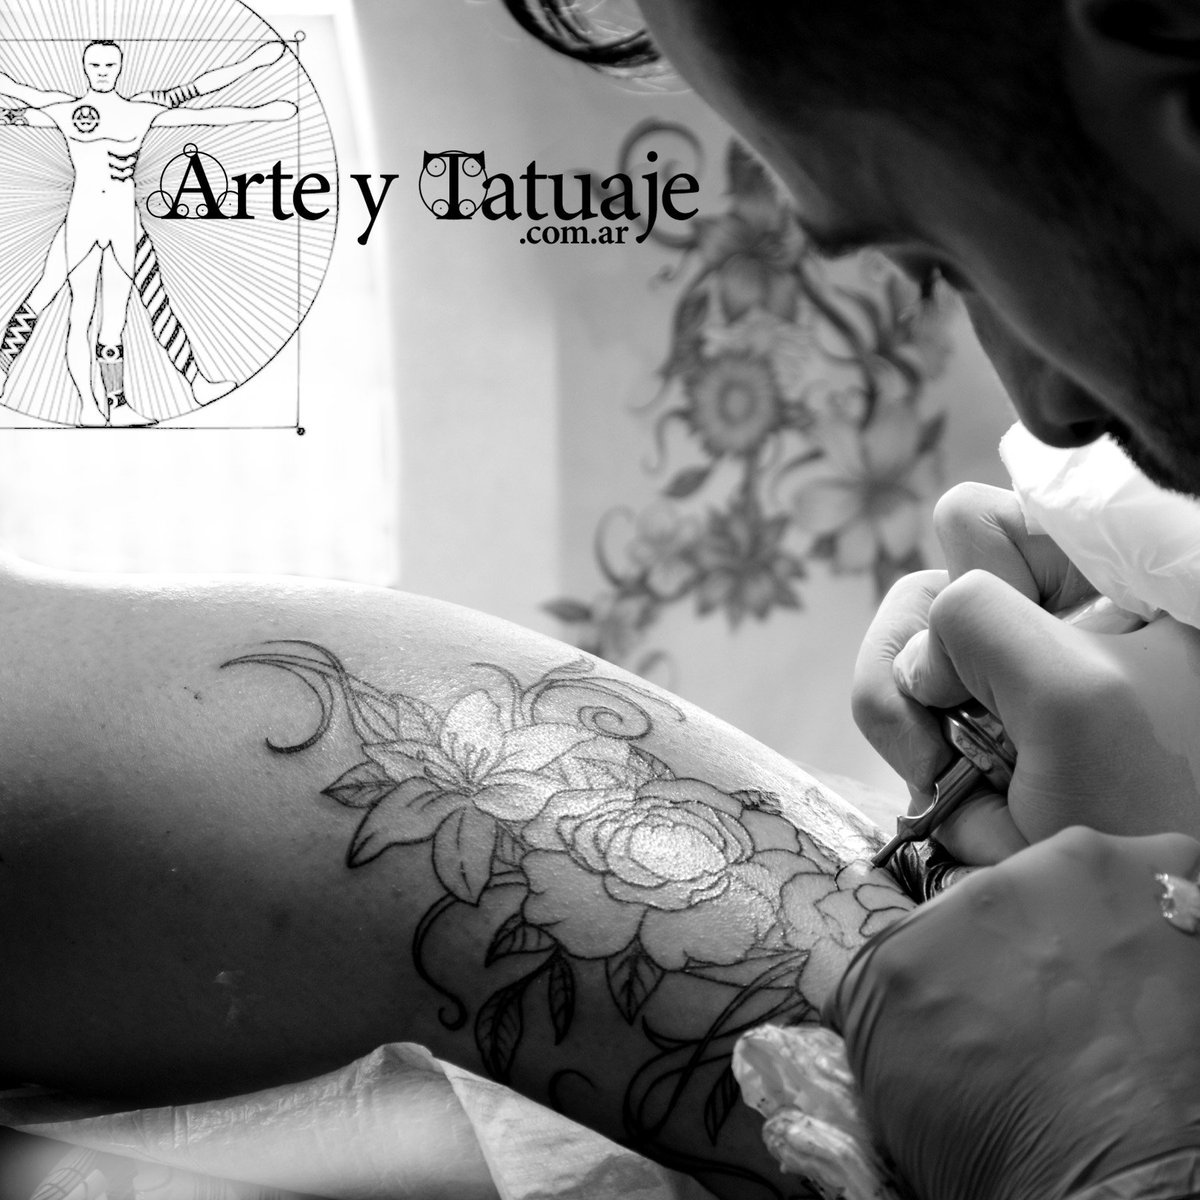 Tatuaje de flores, en proceso por Leandro en #arteytatuaje

Wp: 1126214494

#tatuajes #tattoo #tattooflowers #tatuajeenproceso #tatuajedeflores #flowers #primerasesion